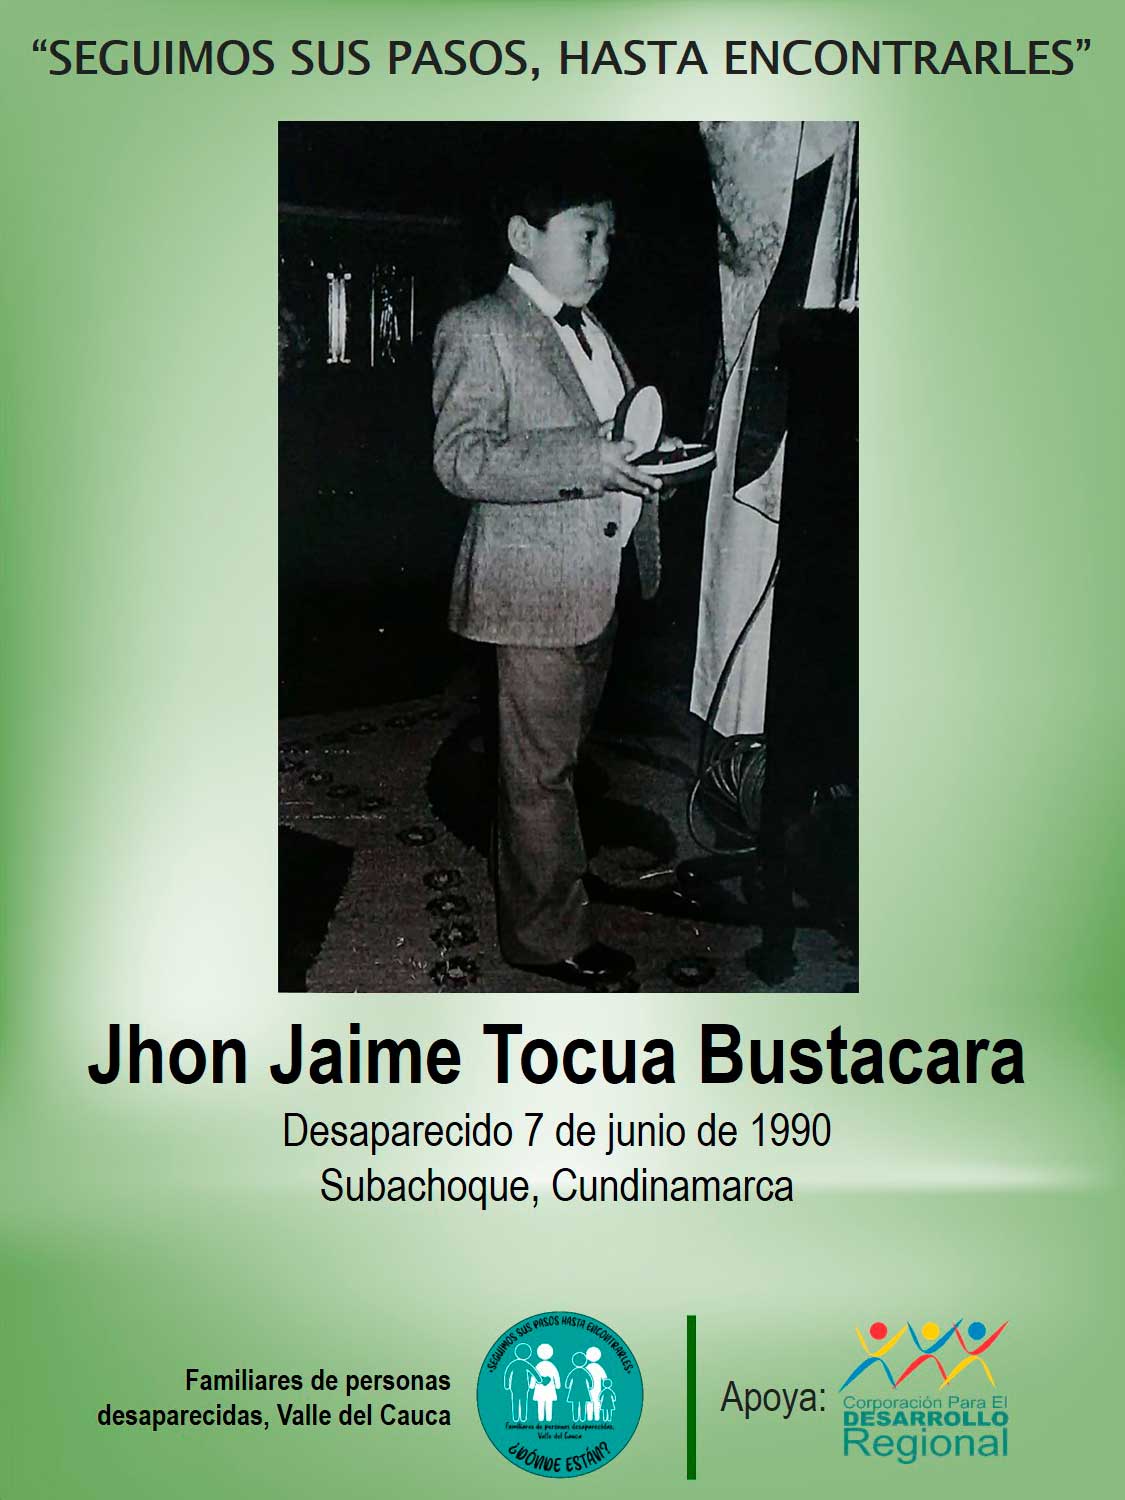 Jhon Jaime Tocua Bustacara